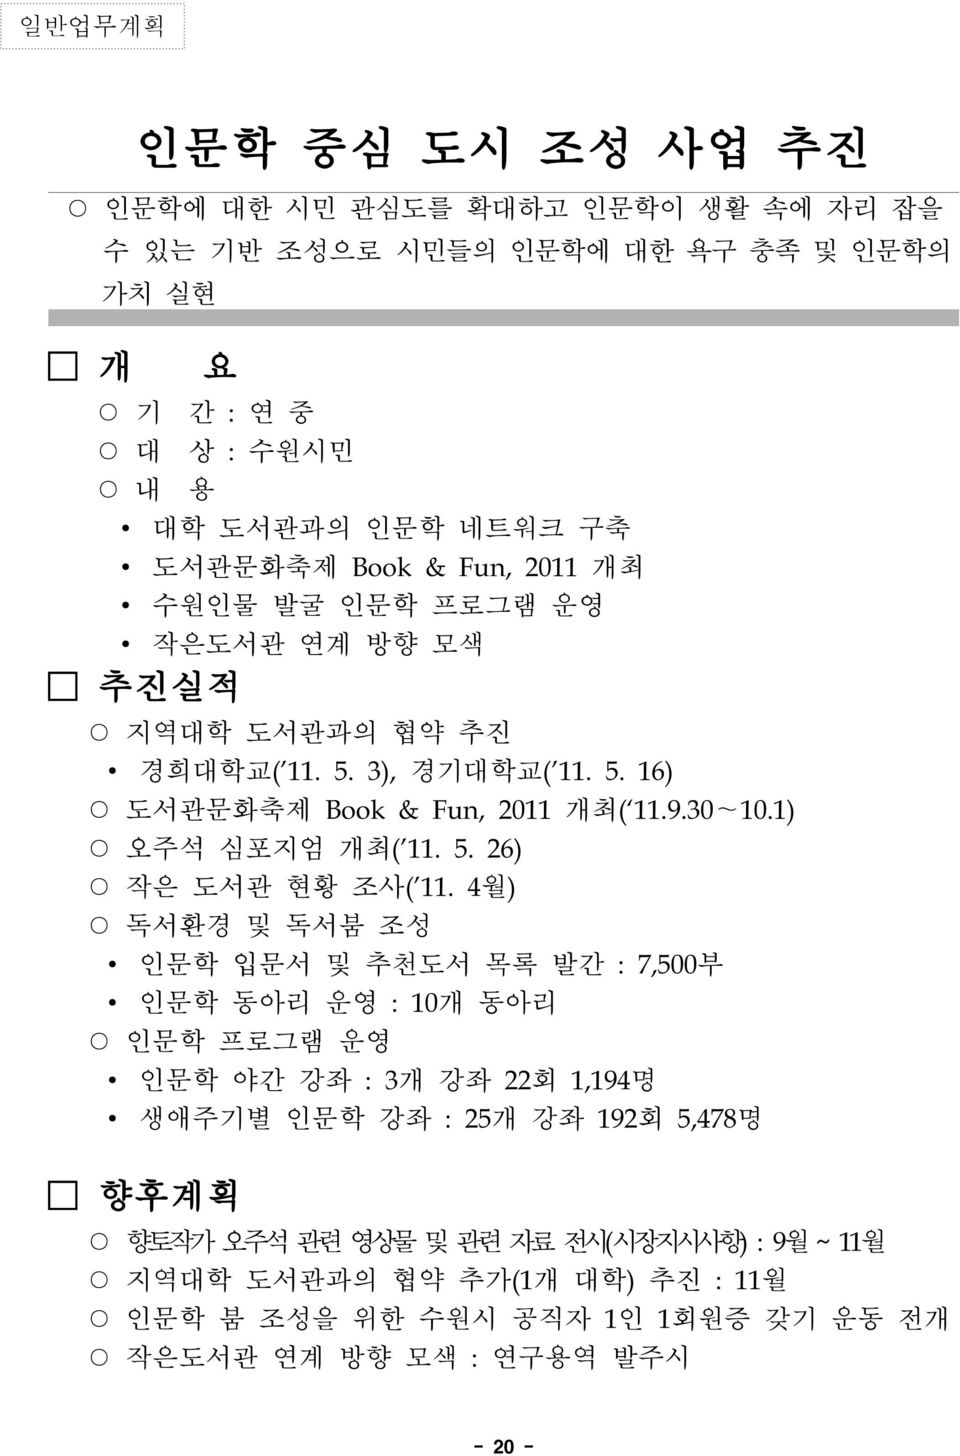 1) 오주석 심포지엄 개최('11. 5. 26) 작은 도서관 현황 조사('11.